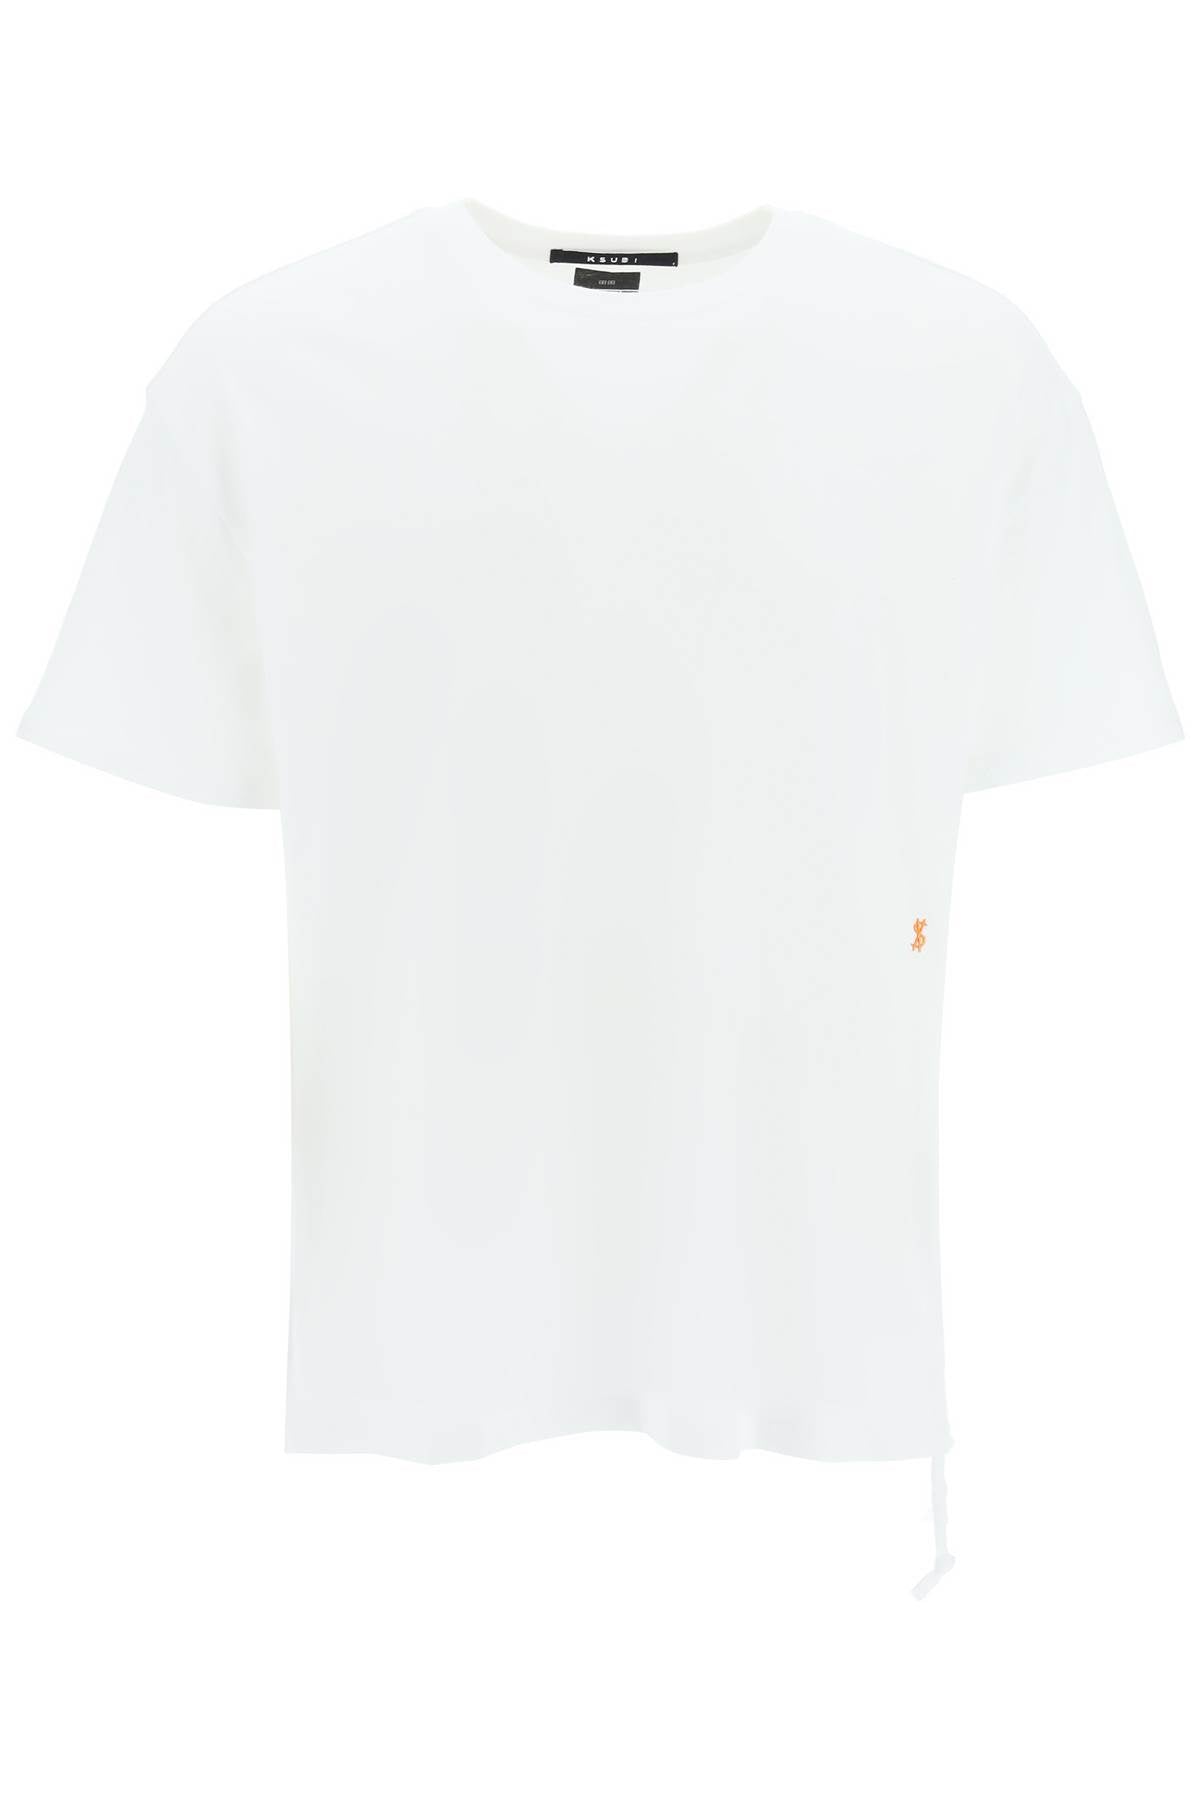 Ksubi '4 X 4 Biggie' T Shirt   White